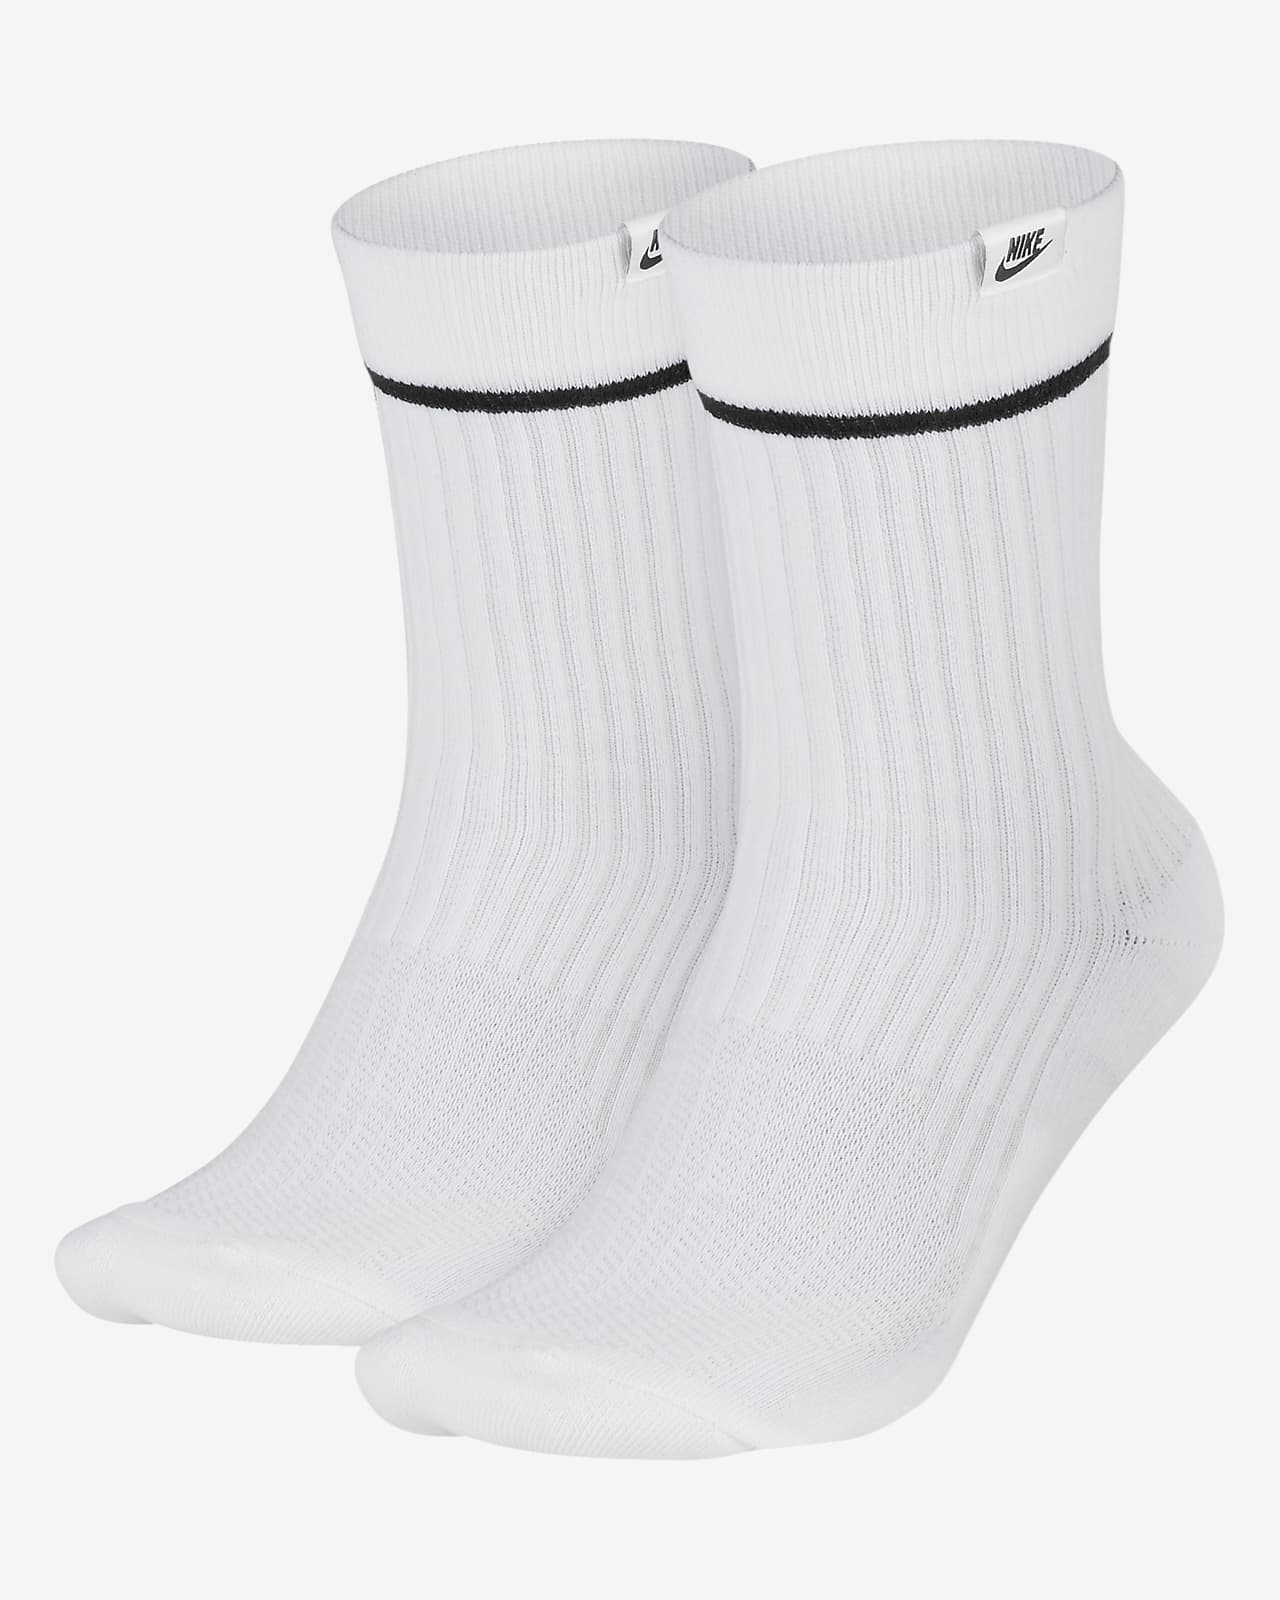 white nike socks near me